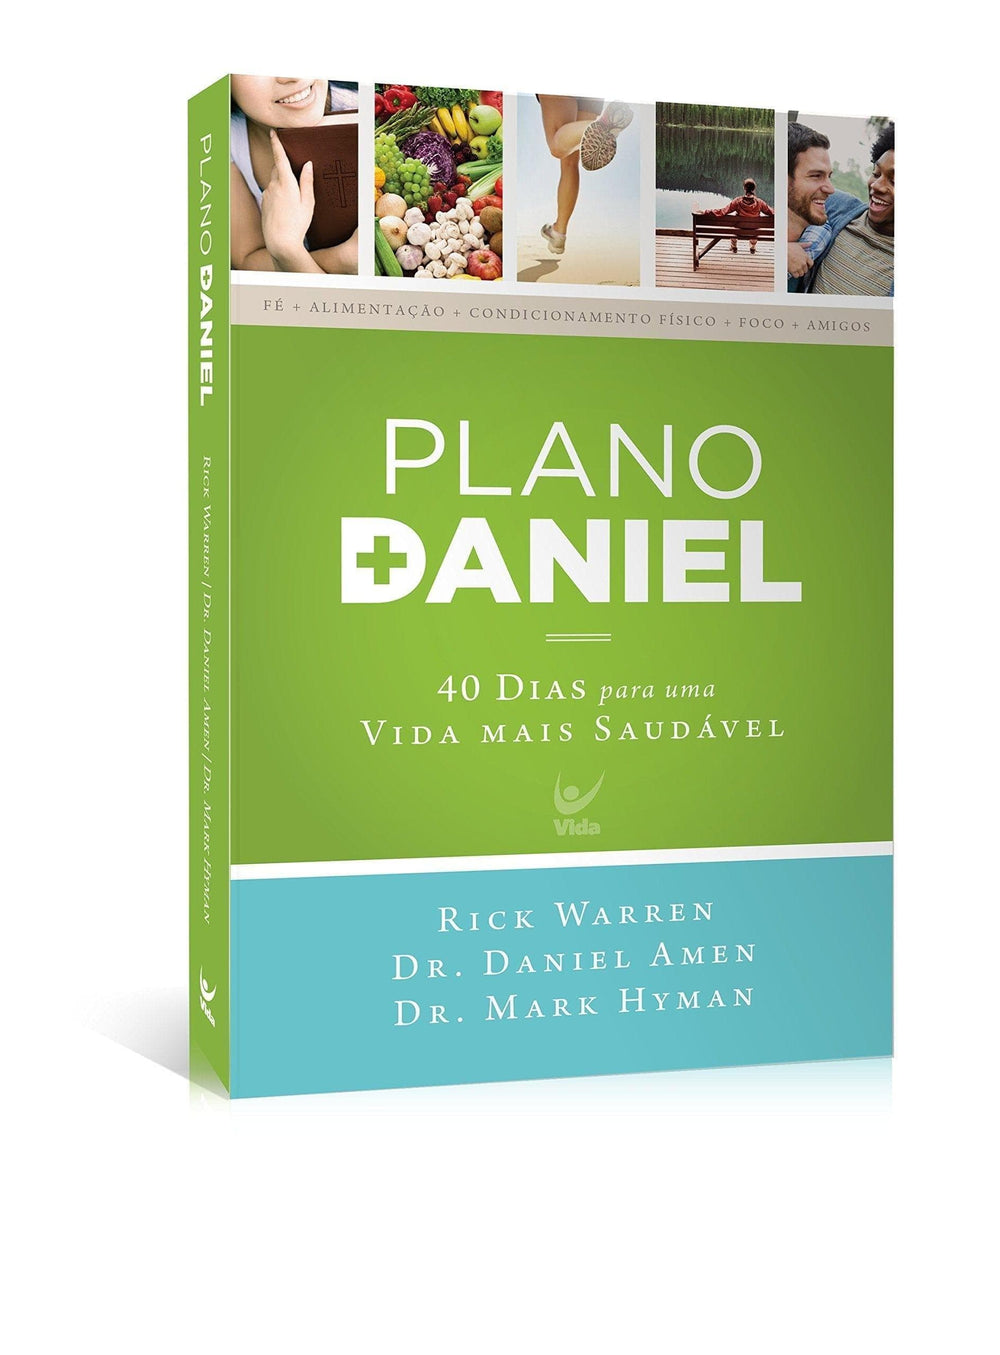 Plano Daniel: 40 Dias Para Uma Vida Mais Saudável - Pura Vida Books